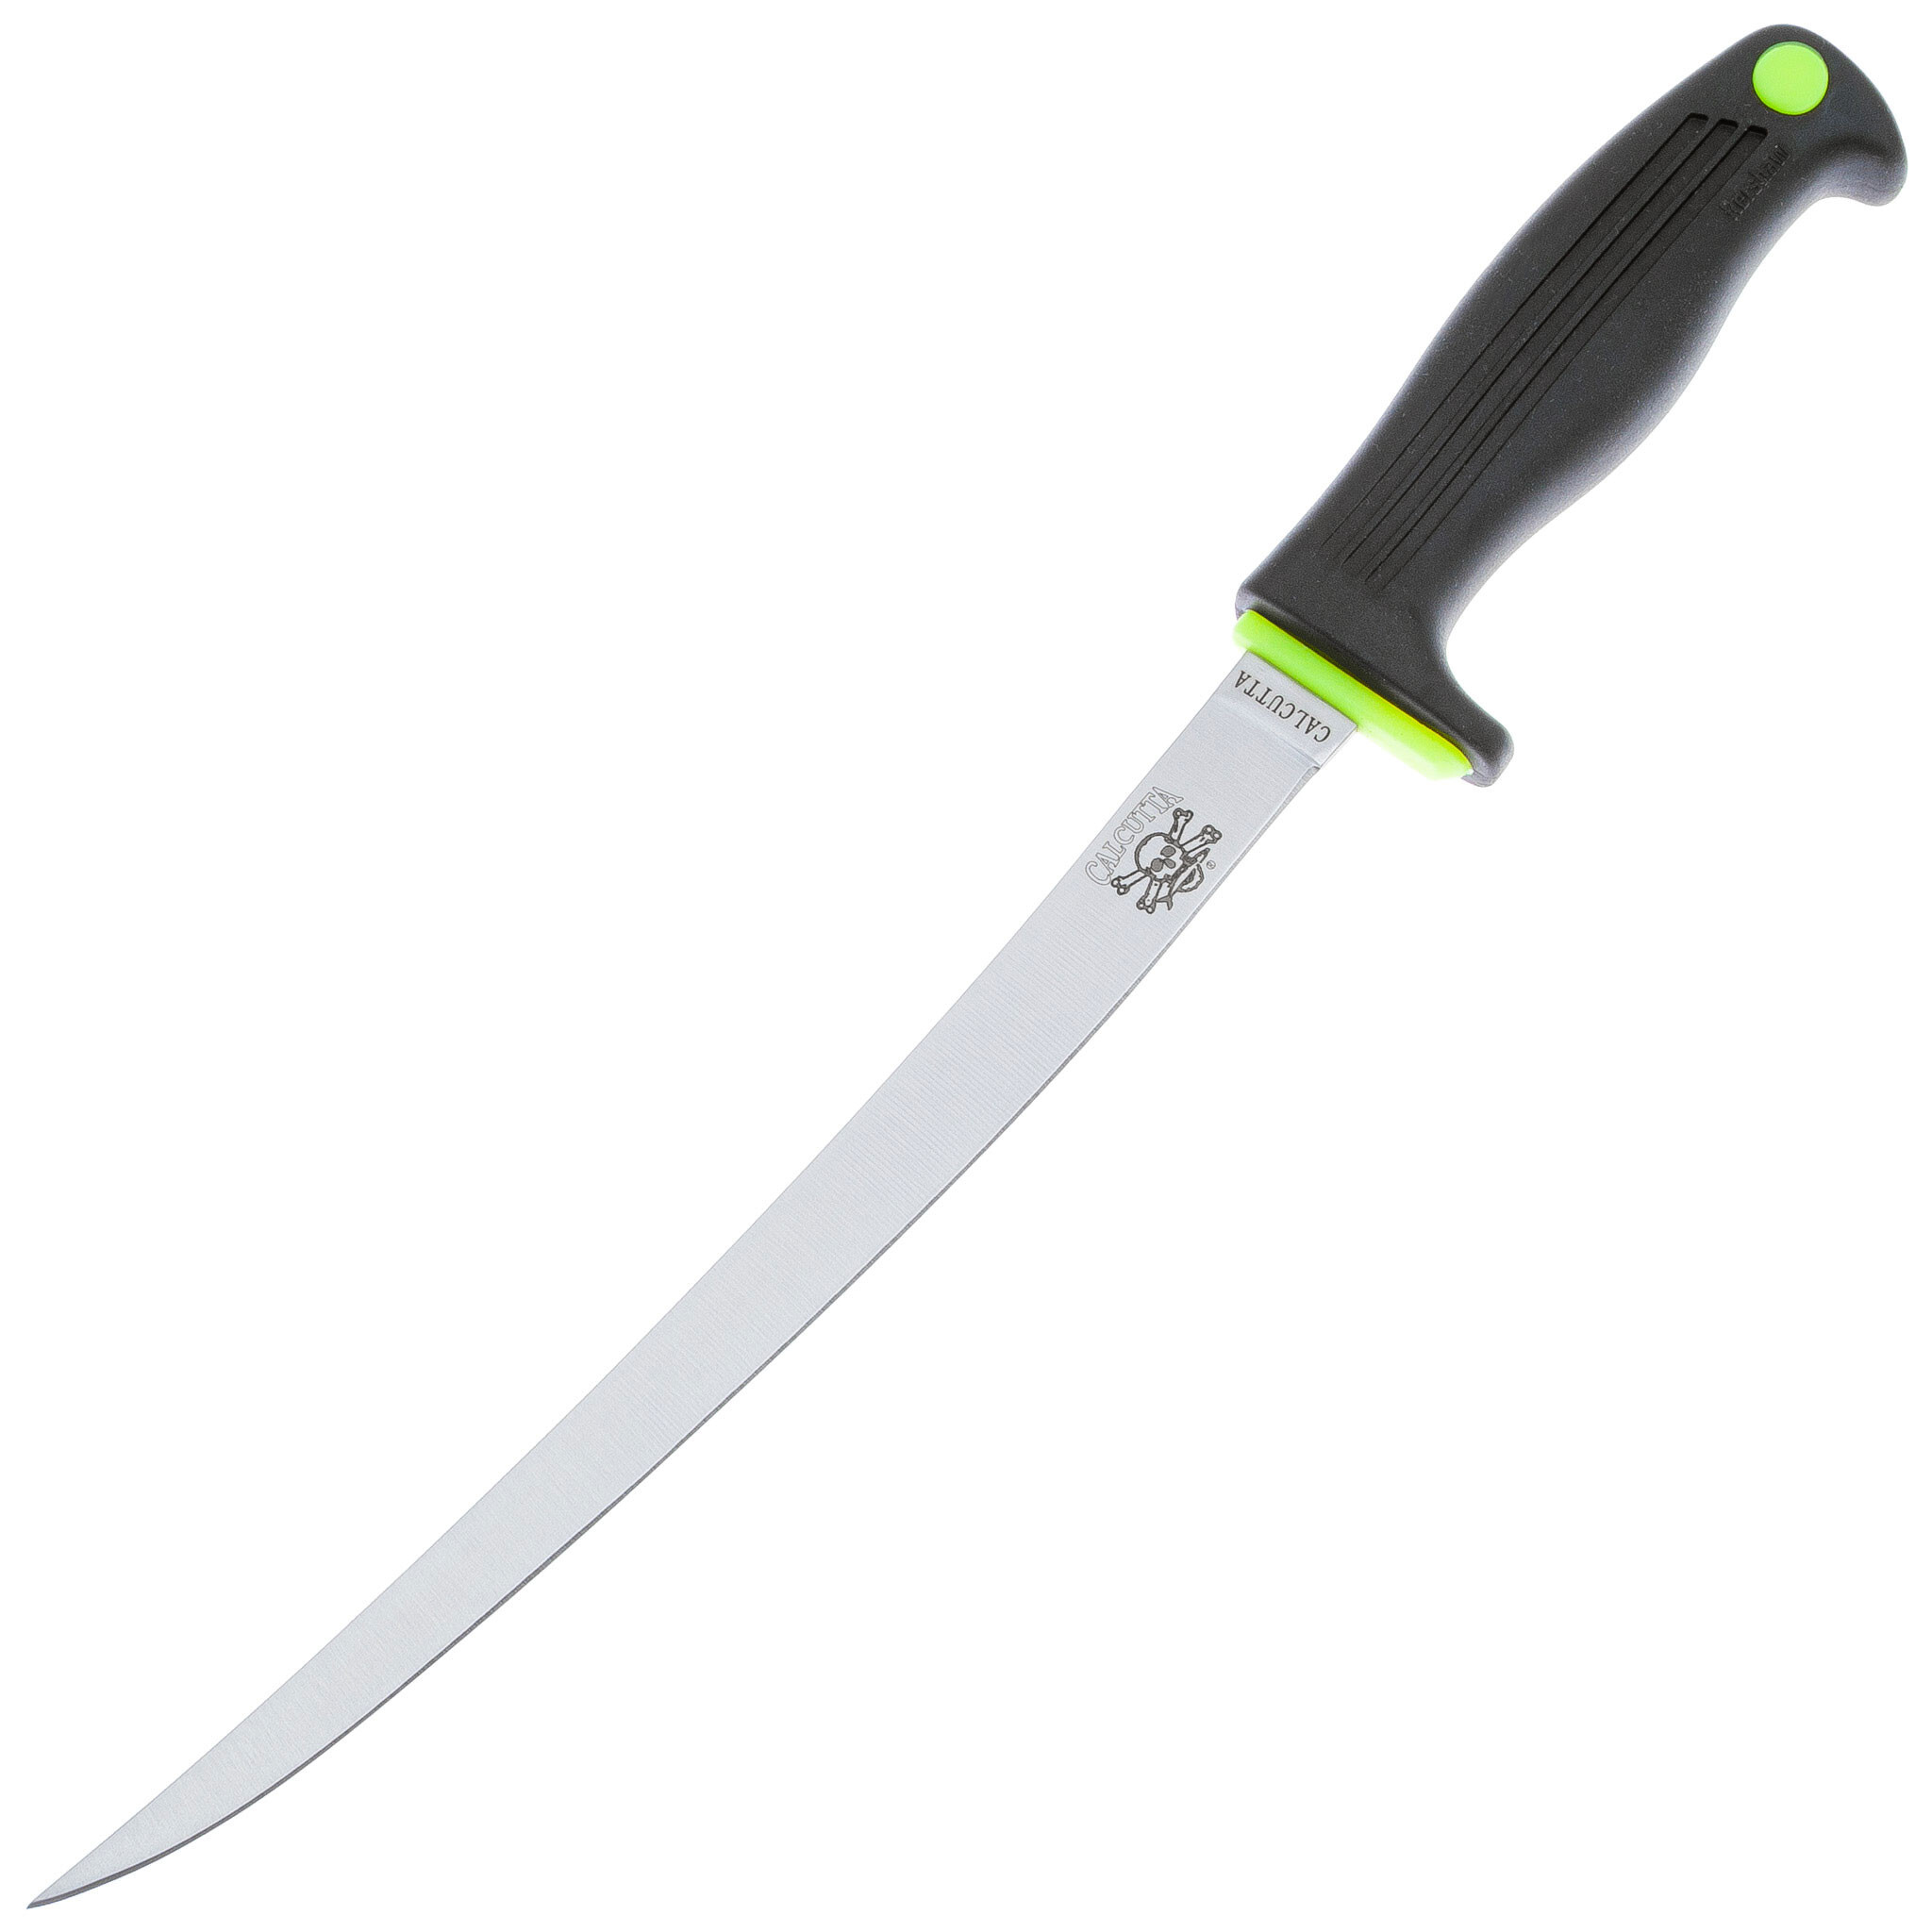 Нож филейный Kershaw Calcutta 9, сталь 420J2, рукоять пластик, черный, Для рыбы, Ножи филейные